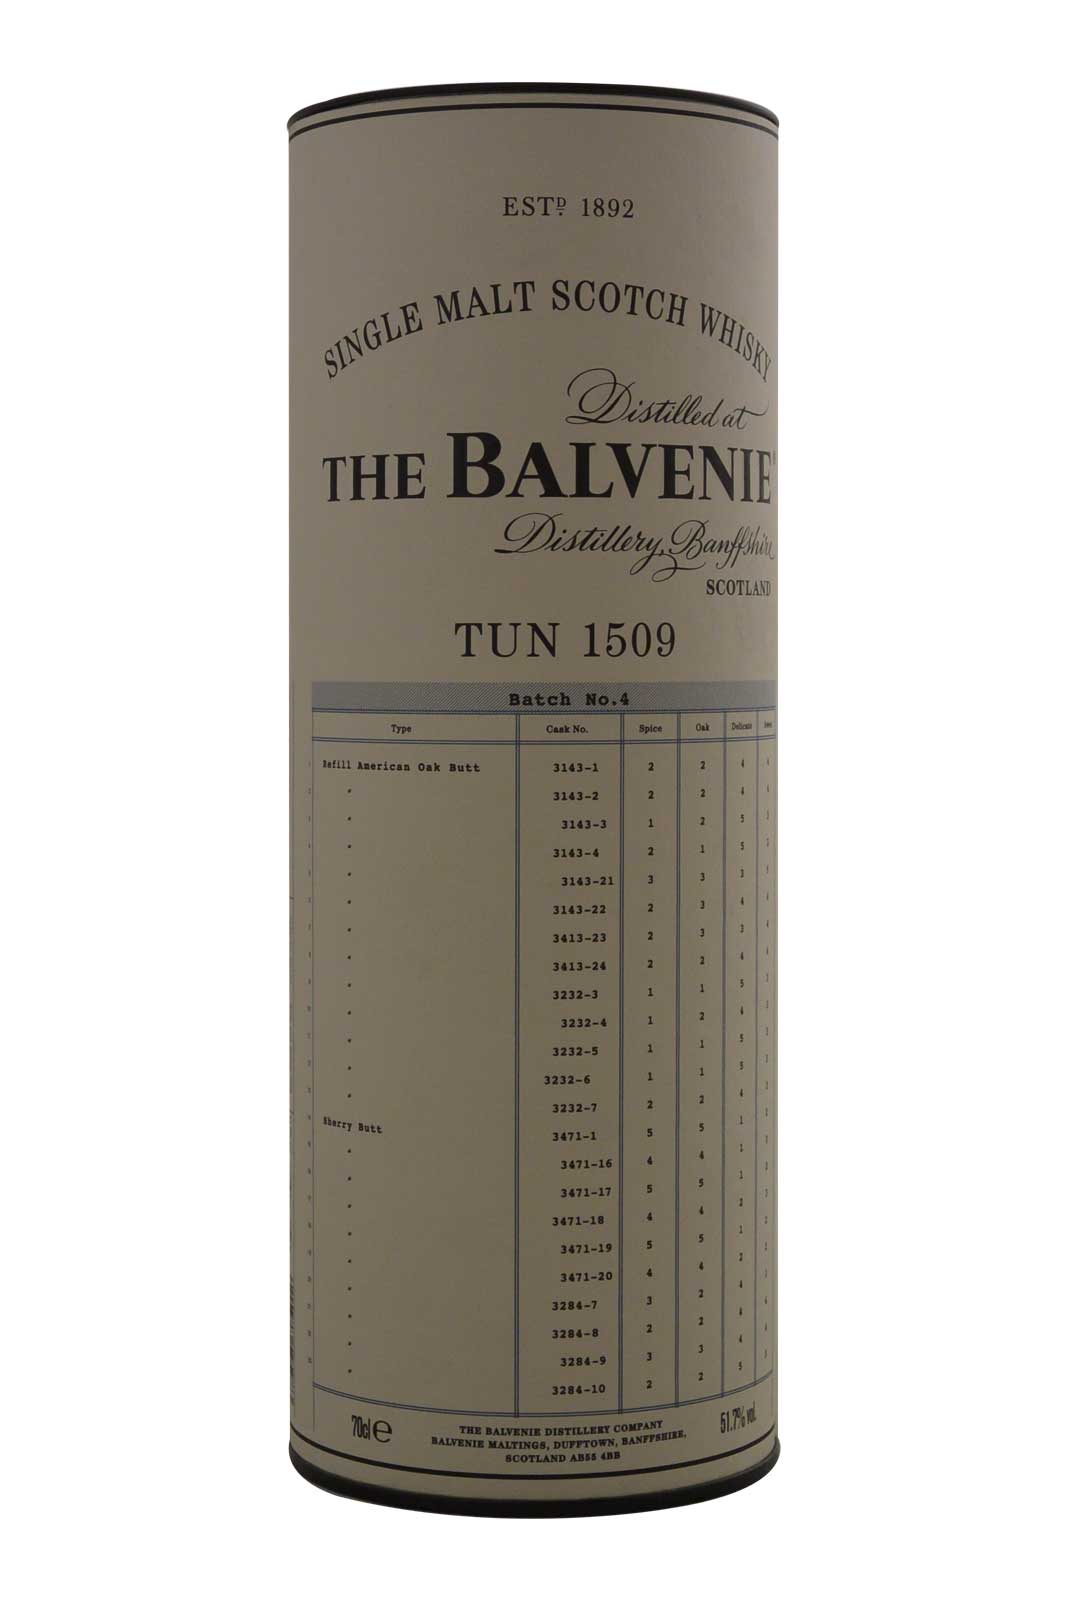 Balvenie Tun 1509 Batch No. 4